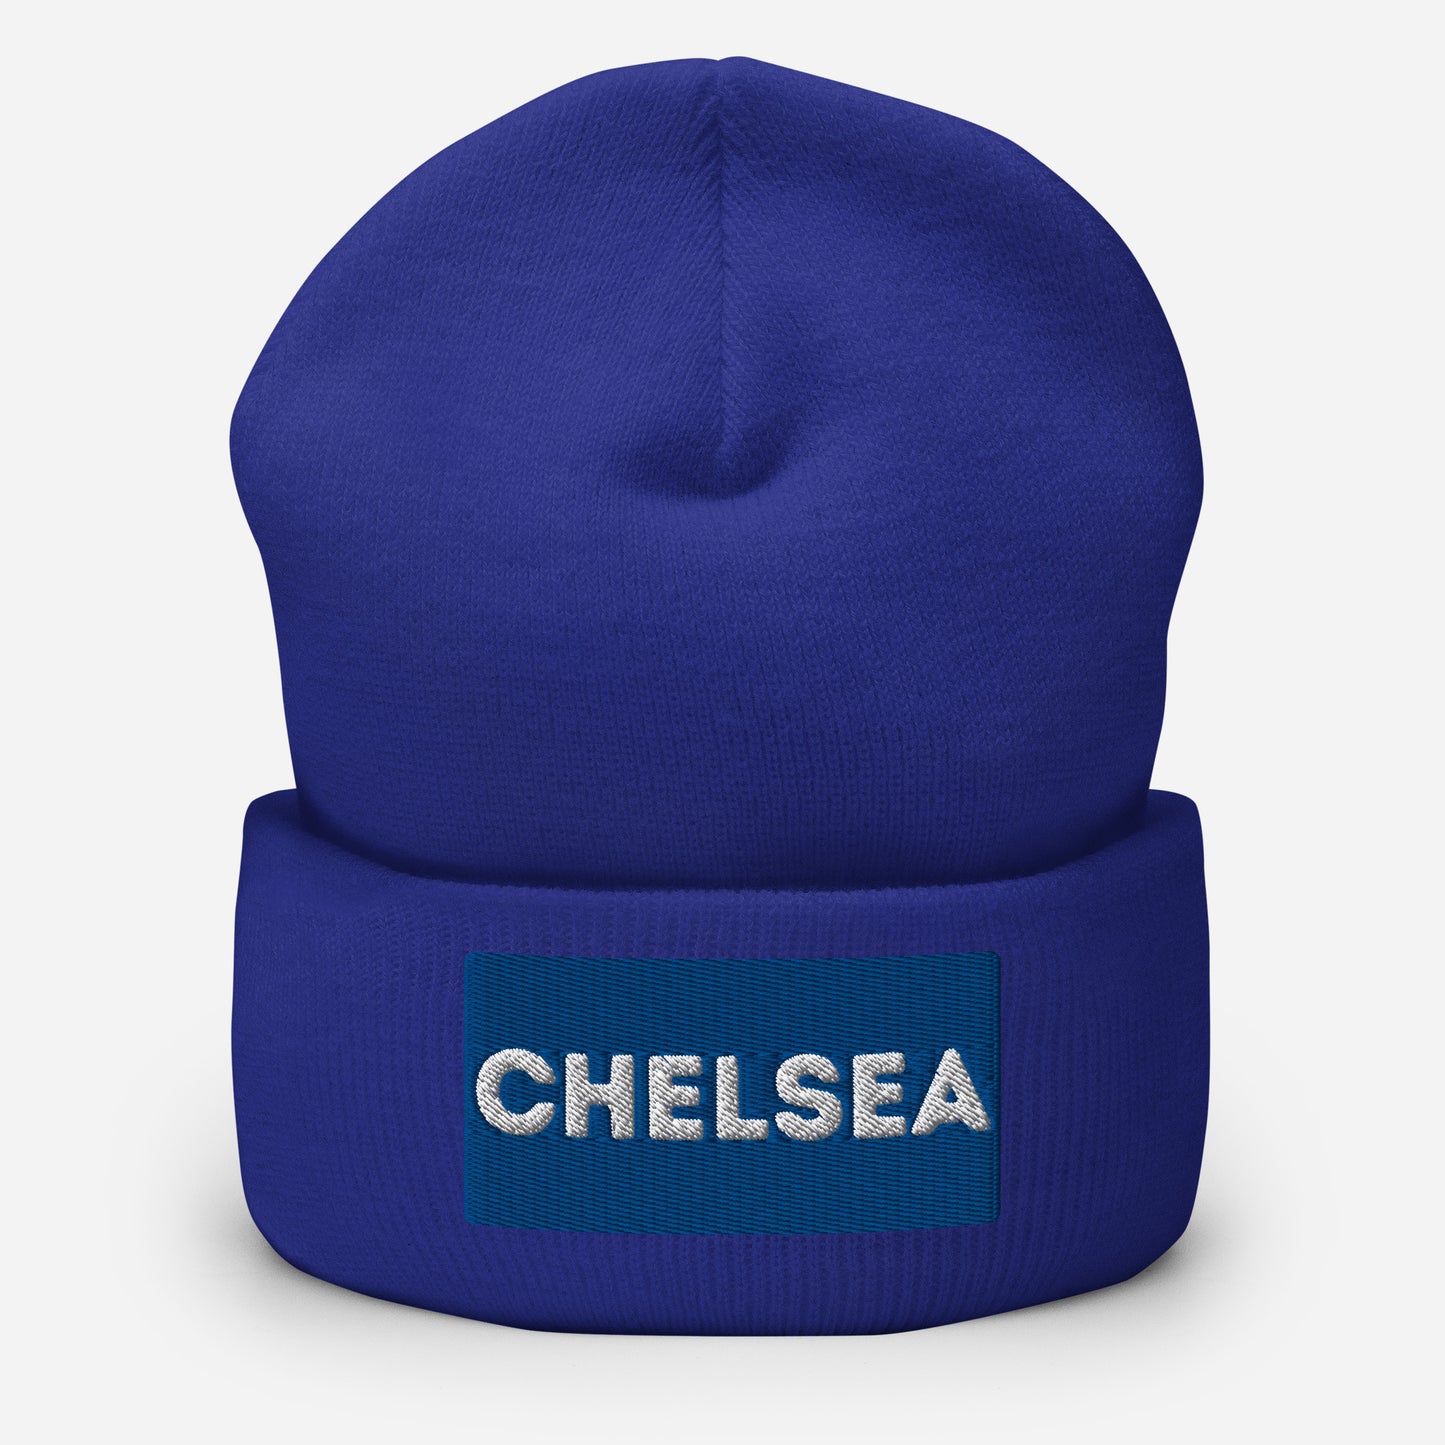 Chelsea Cuffed Beanie Hat